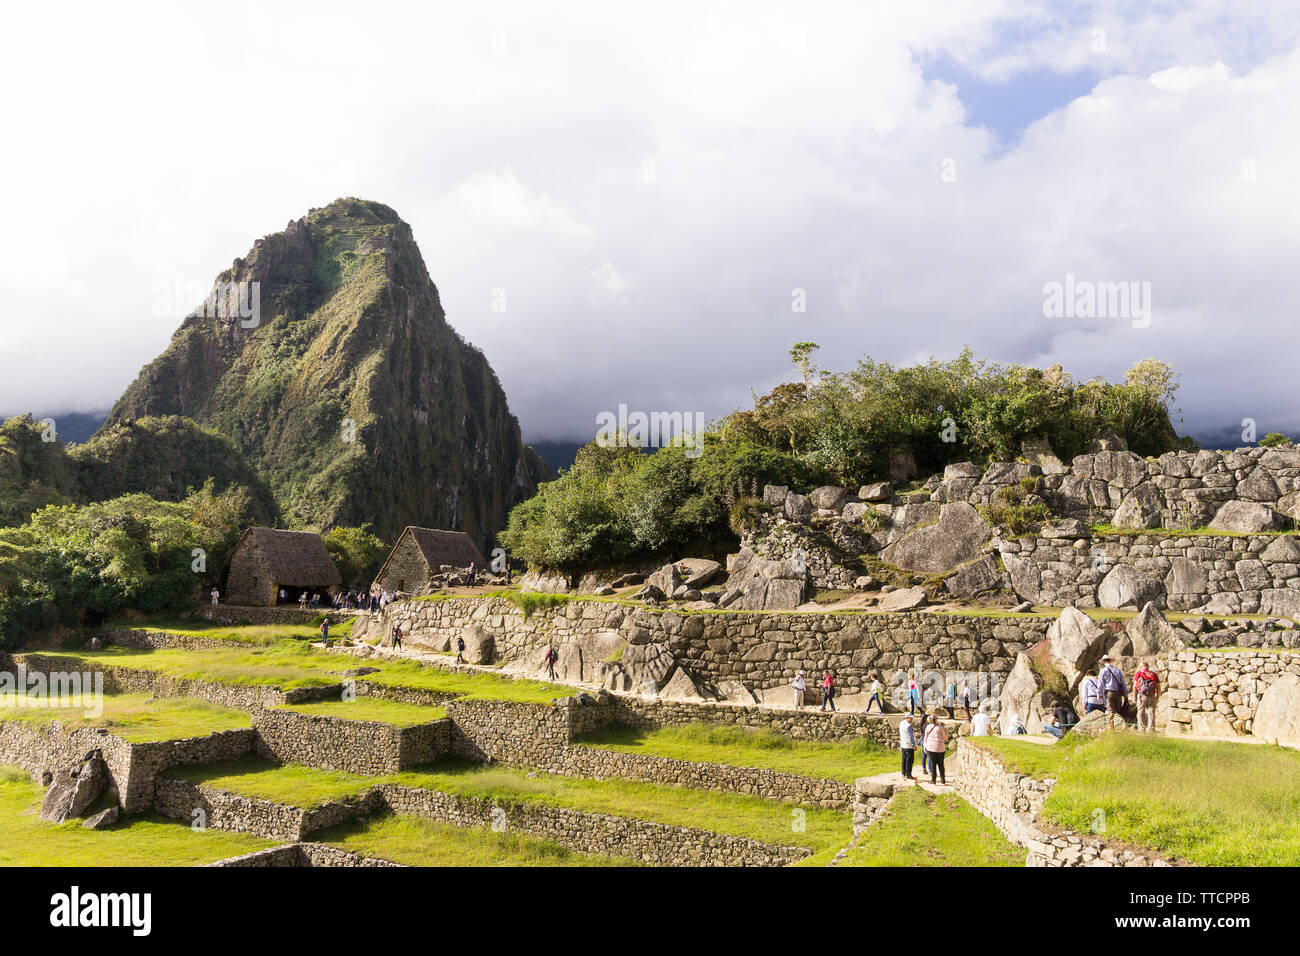 Le Machu Picchu au Pérou - Touristes marcher autour de la citadelle de Machu Picchu, avec vue sur la montagne Huayna Picchu en arrière-plan, le Pérou. Banque D'Images